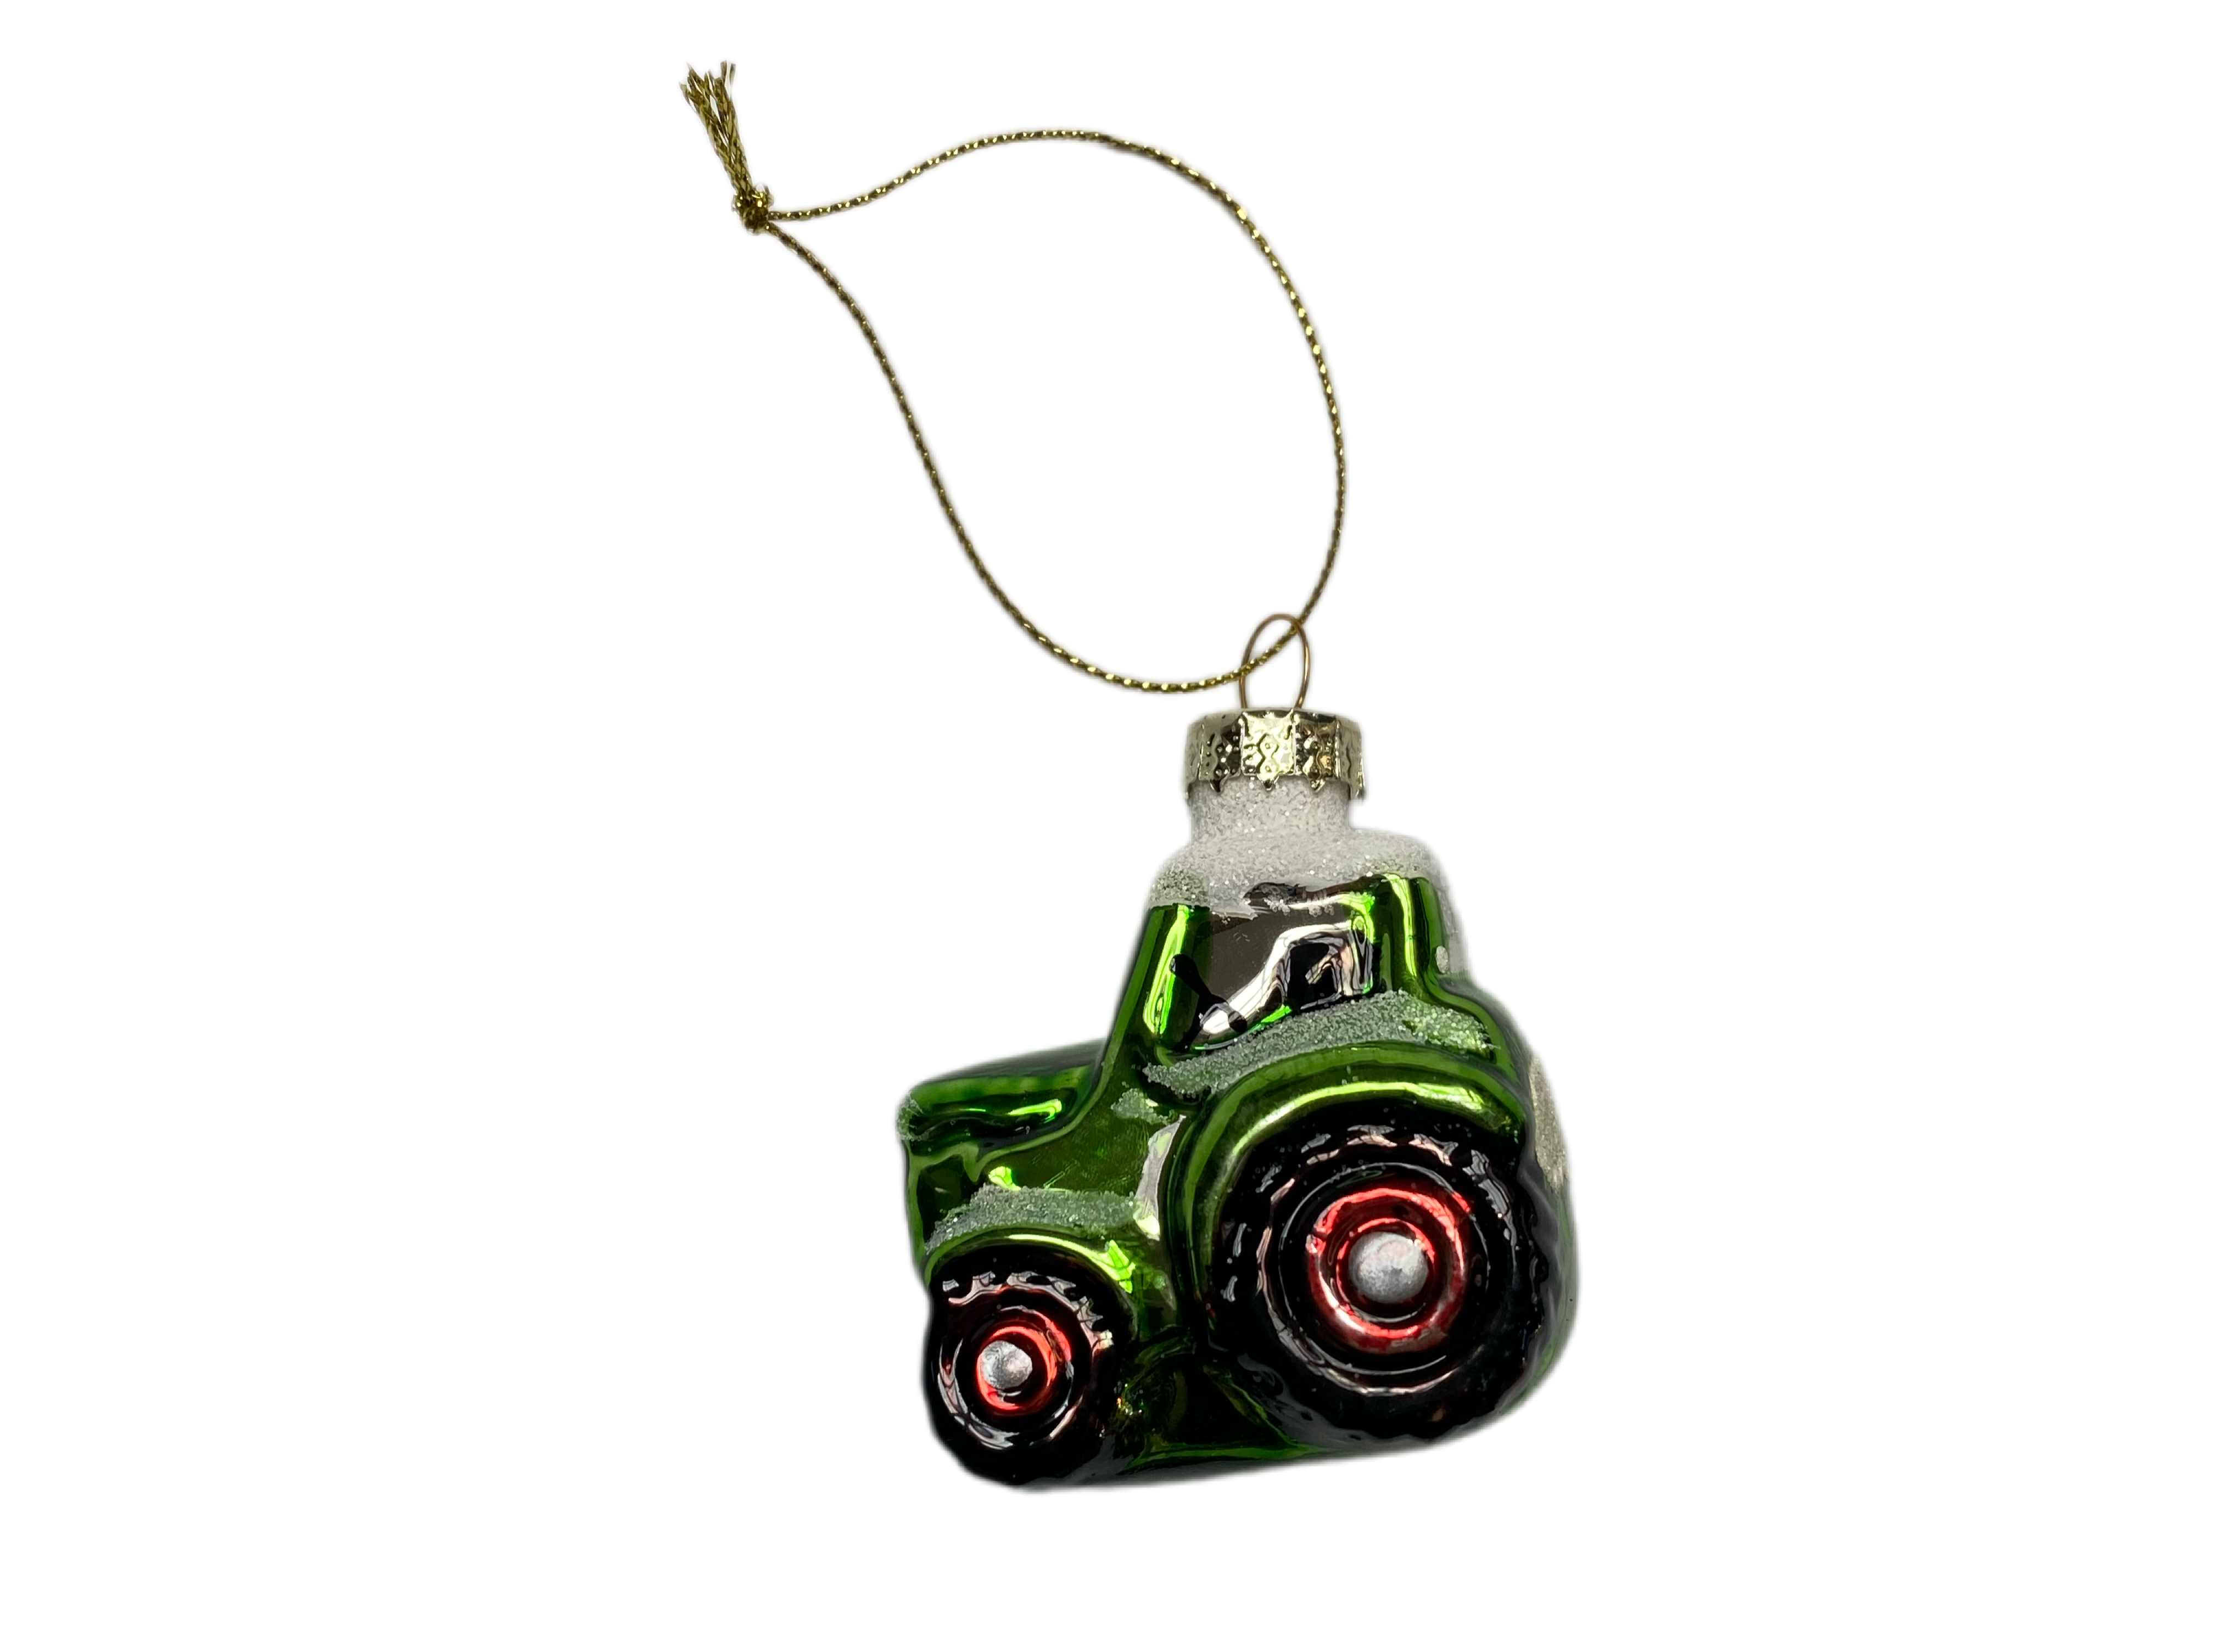 Tractor ornament